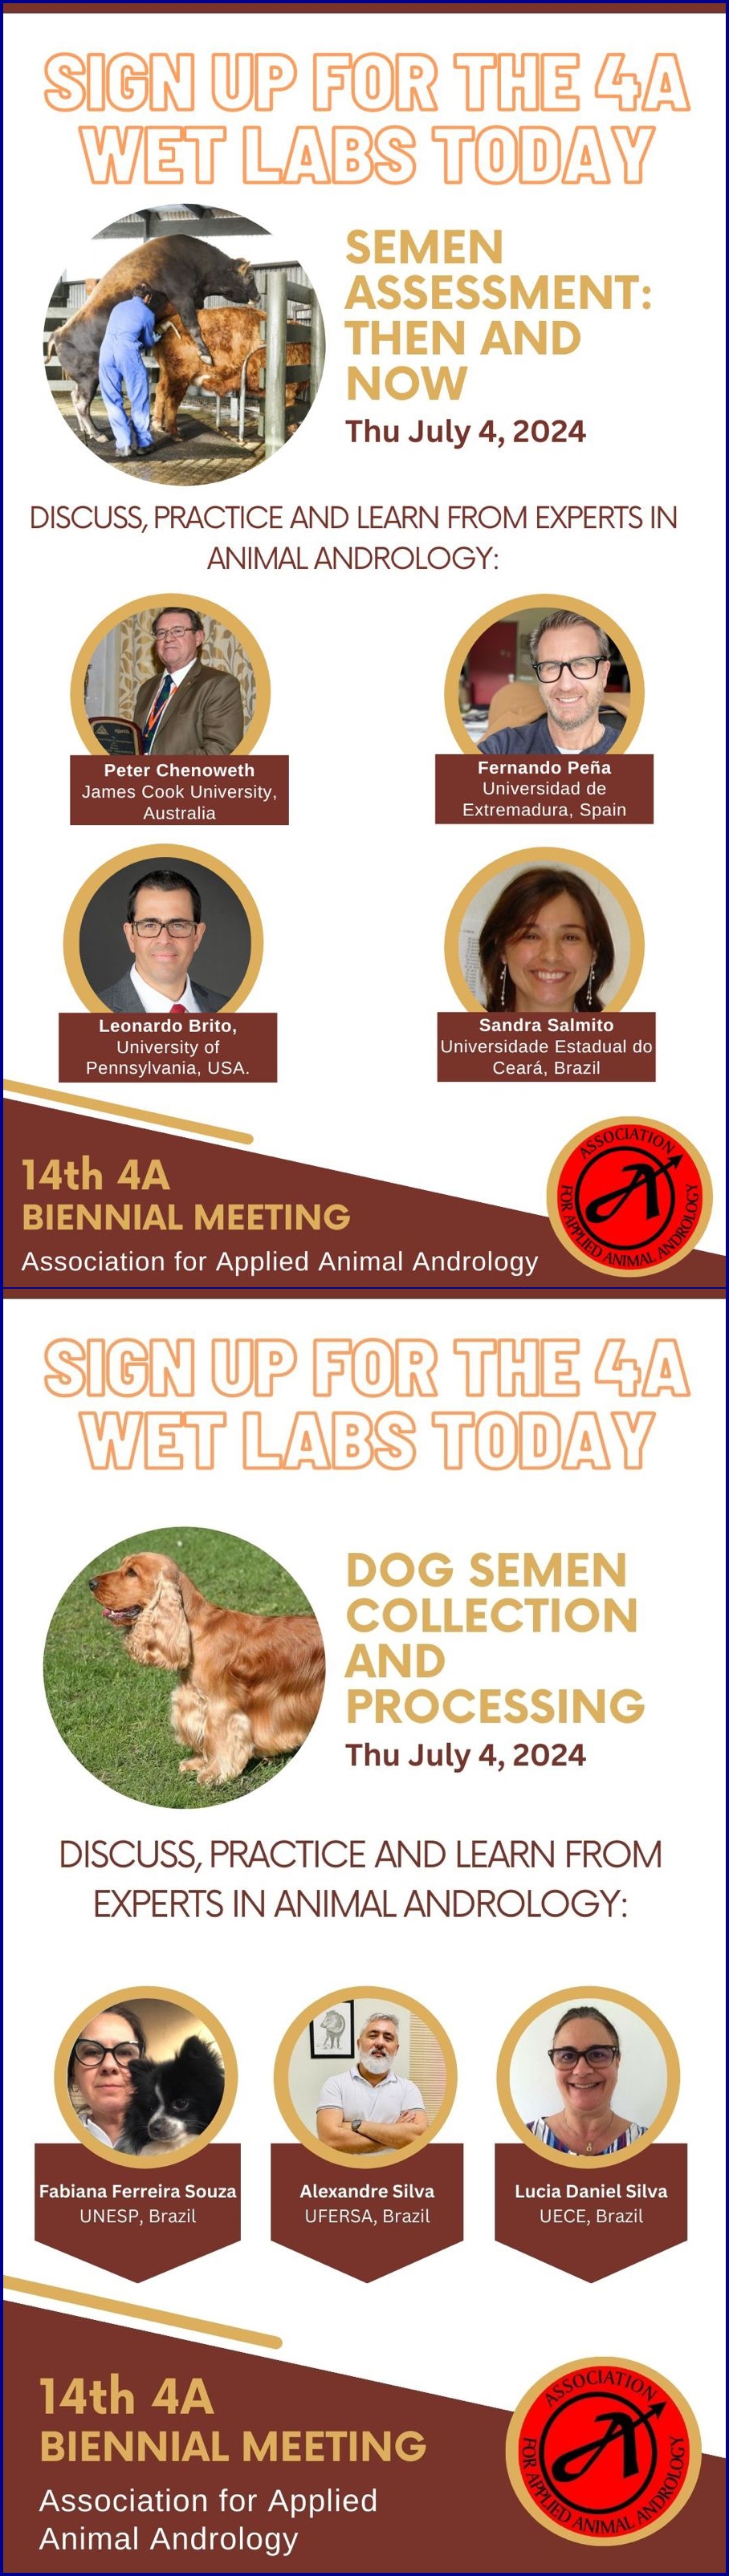 Núcleo Integrado de Biotecnologia – NIB, promove Cursos na 14ª Reunião Bienal da Associação para Suporte de Andrologia Animal